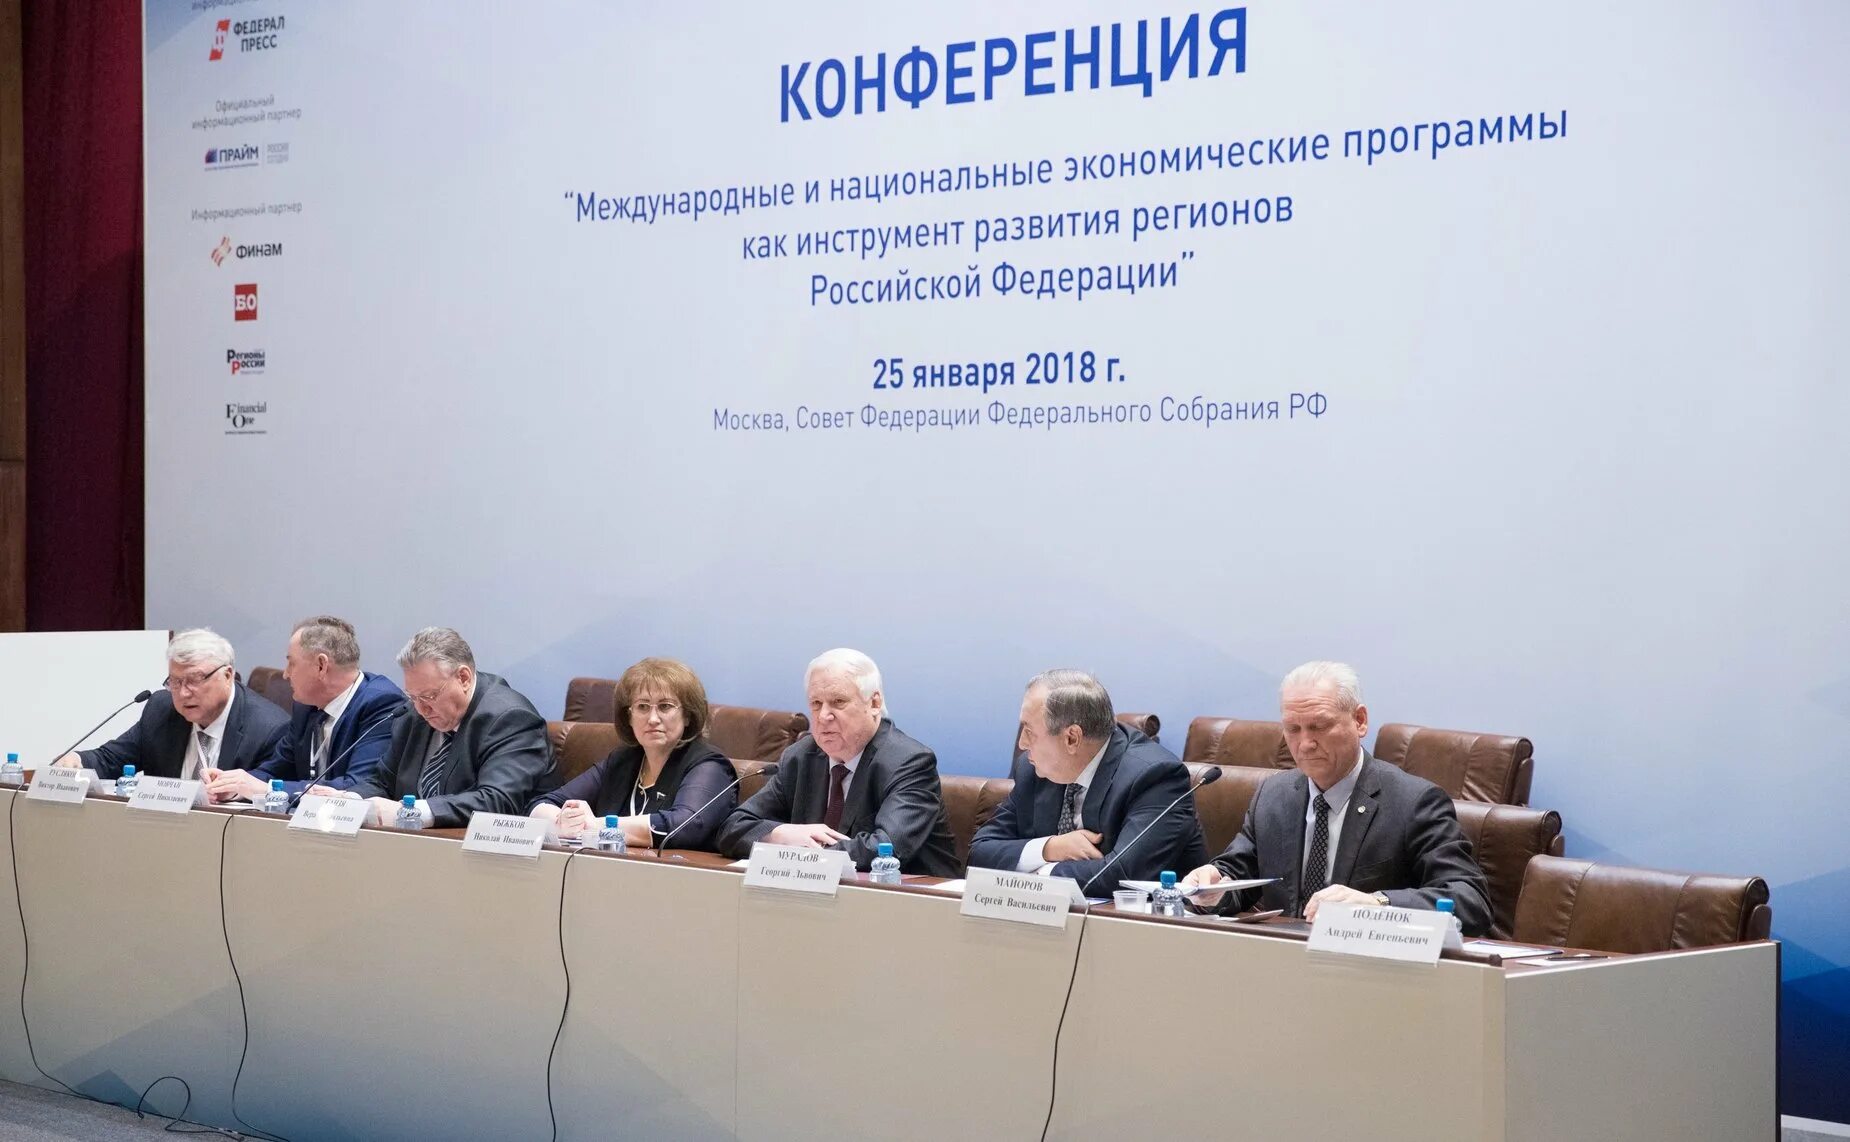 Национальная экономическая служба. Совет Федерации пресс конференция.